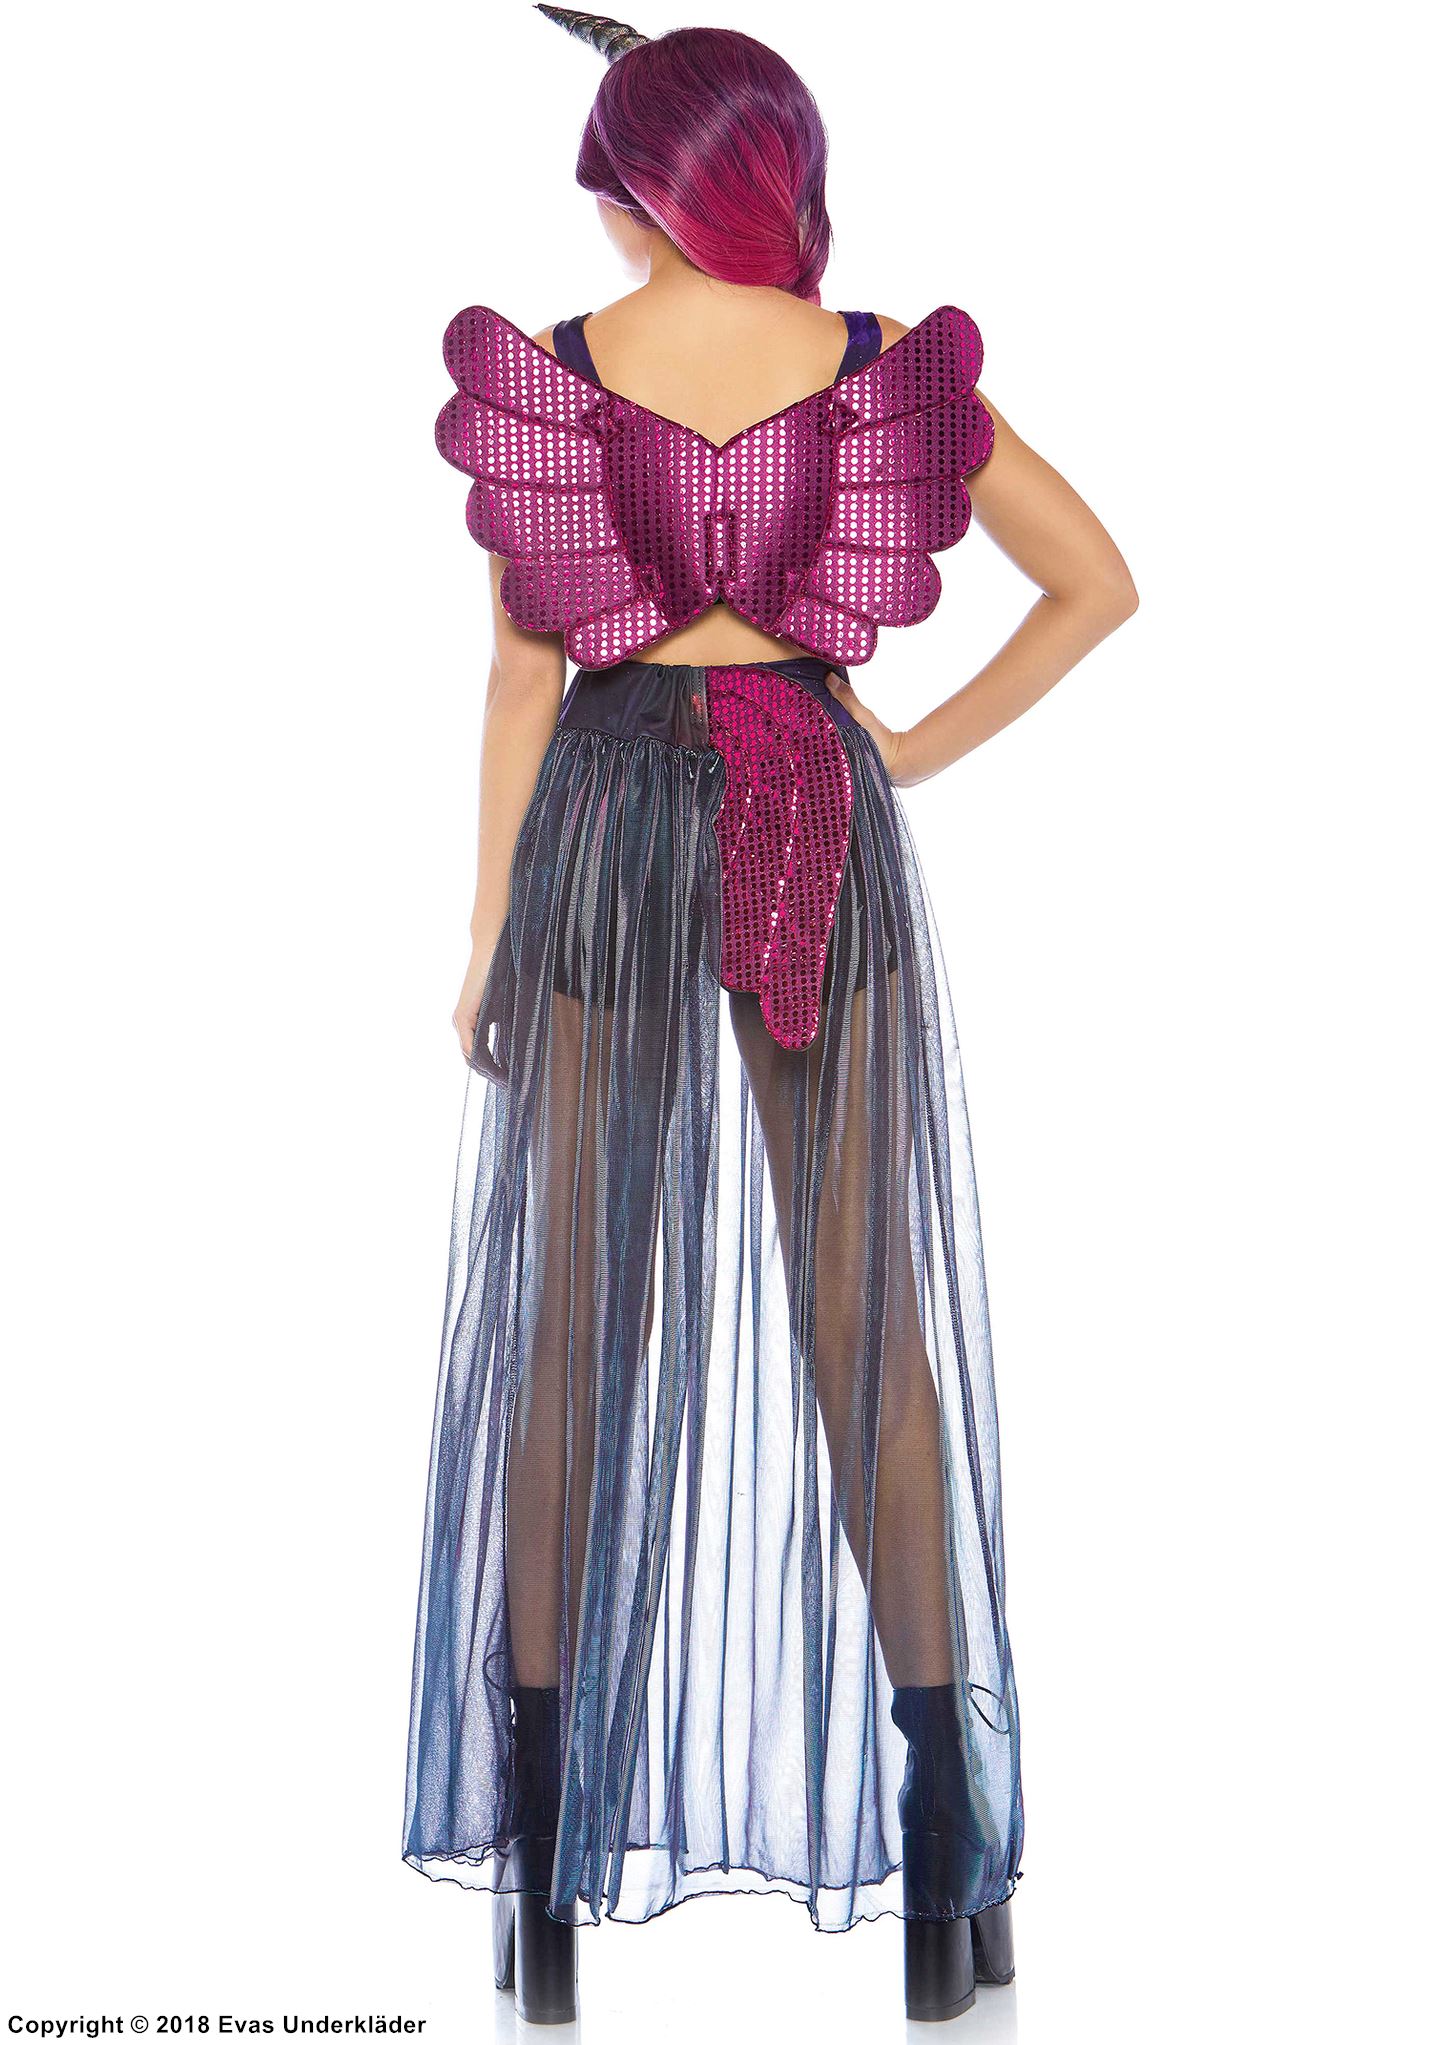 Unicorn (woman), top and skirt costume, rhinestones, iridescent fabric